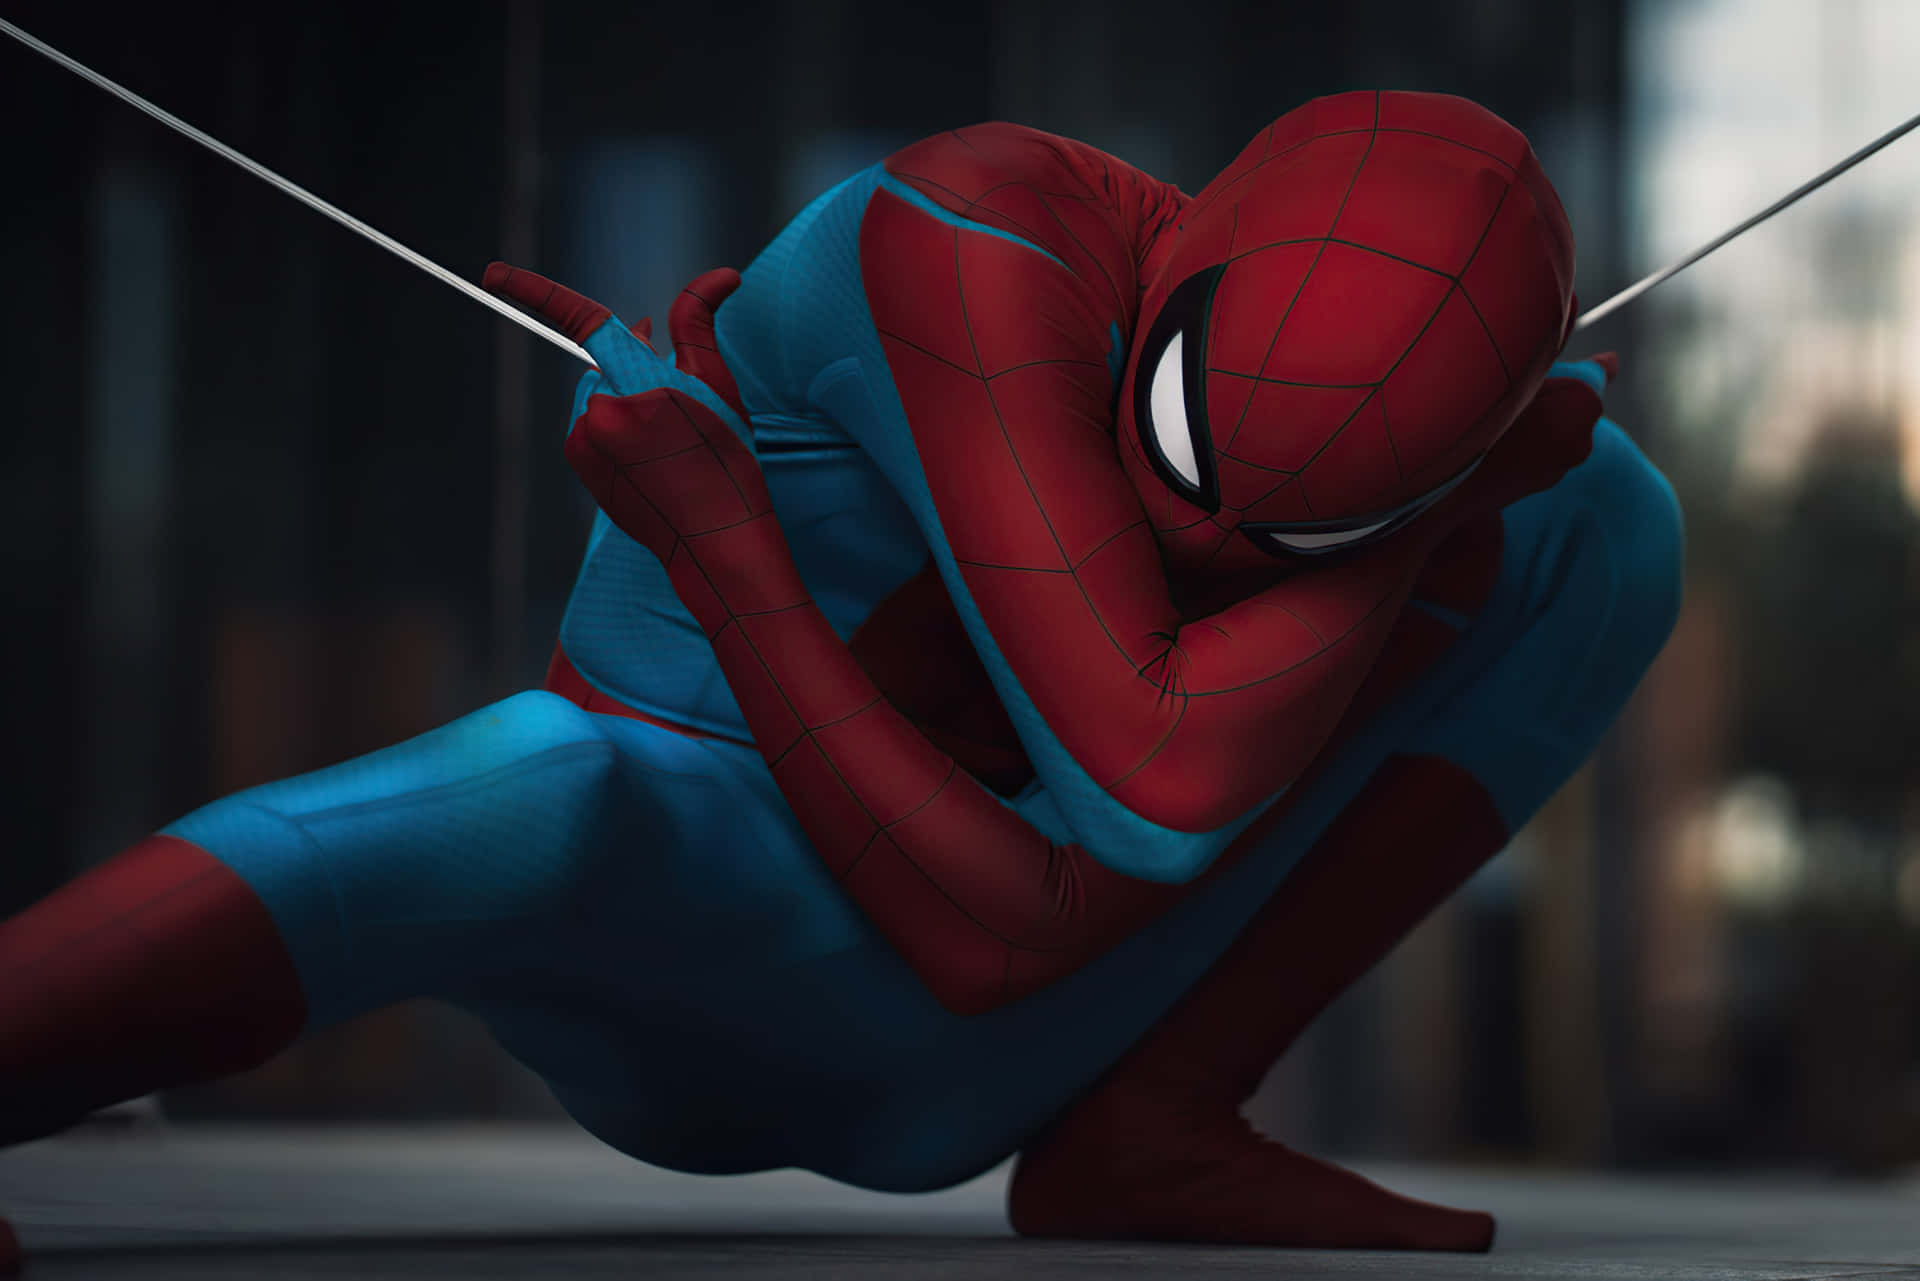 Spider Man - The Amazing Spider Man - Hd Wallpaper